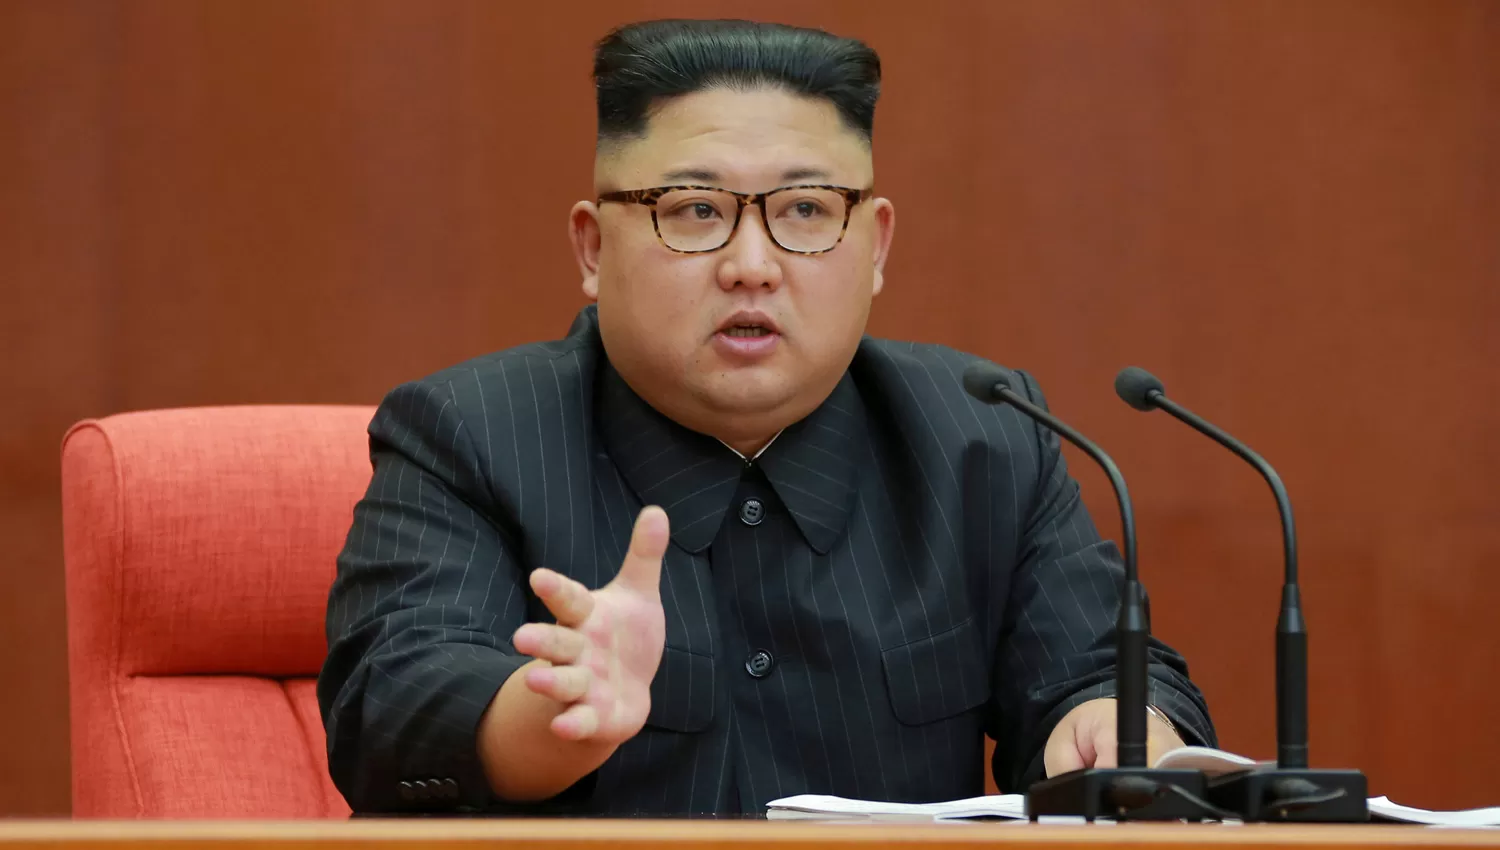 PARA LA DEFENSA. El Gobierno norcoreano, que Kim Jong Un, realizó diversas pruebas nucleares en el último año y estas acciones militares fueron miradas con recelo desde occidente. REUTERS